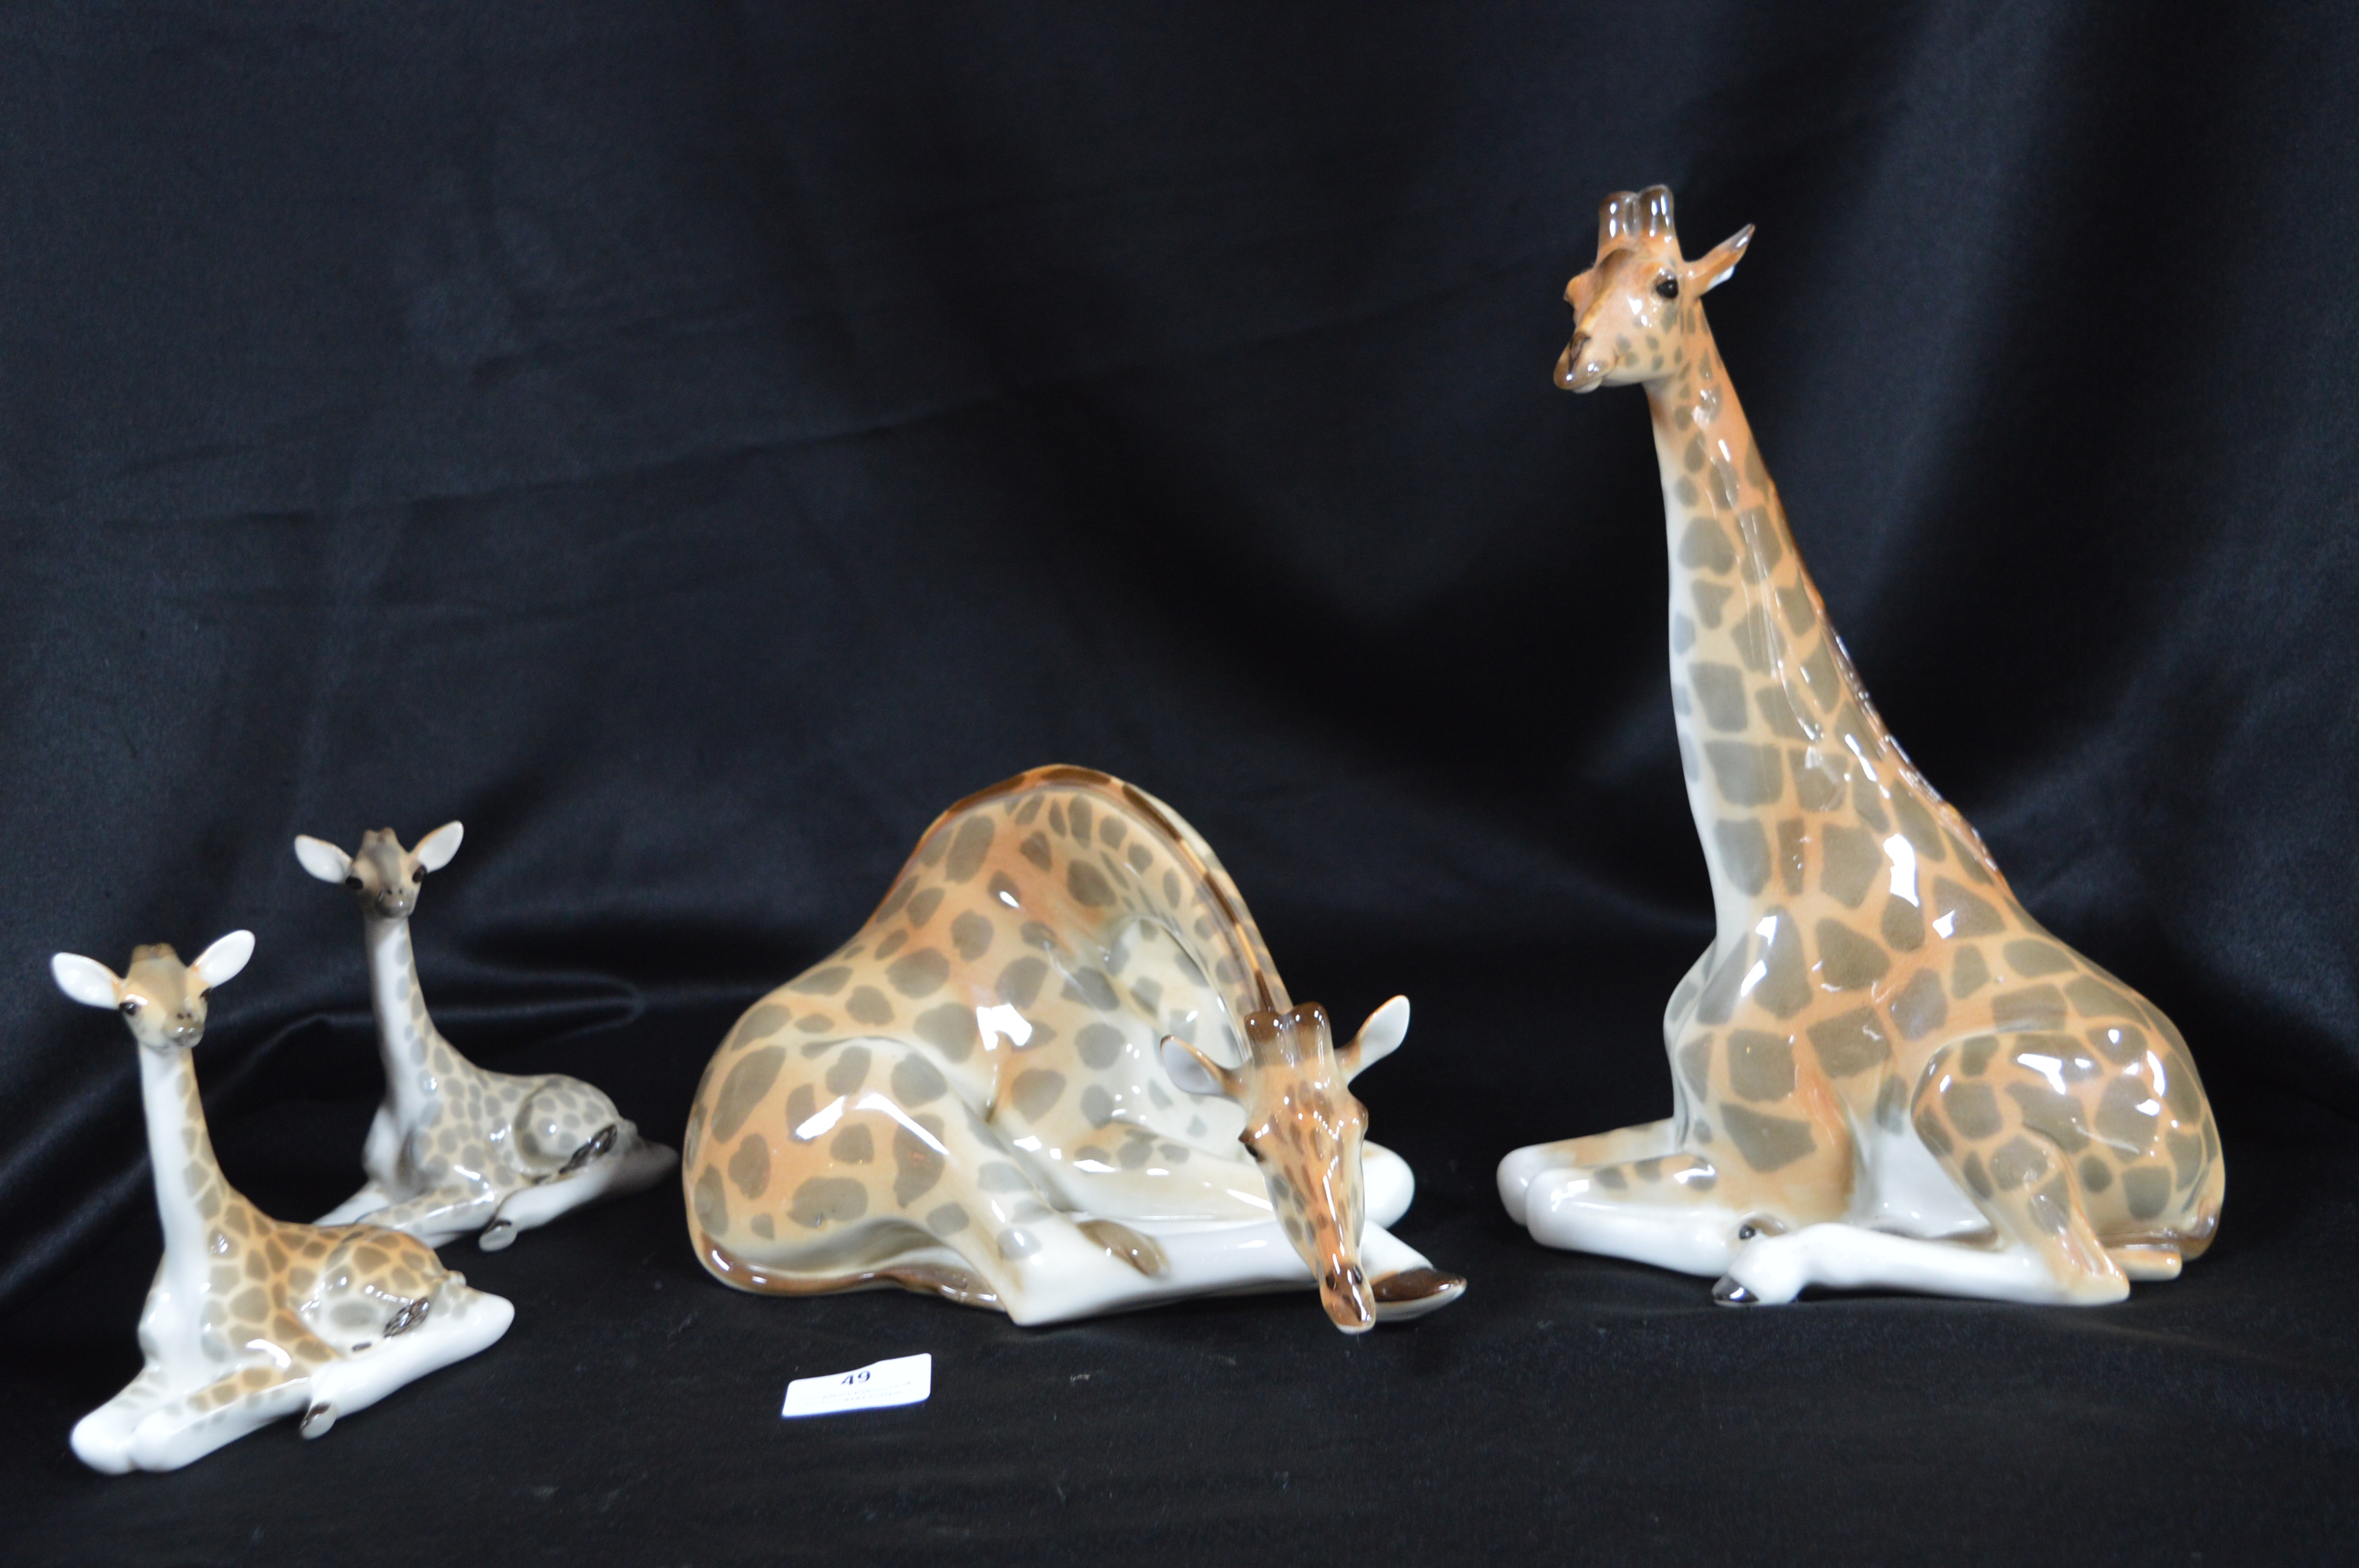 Four Russian Giraffes